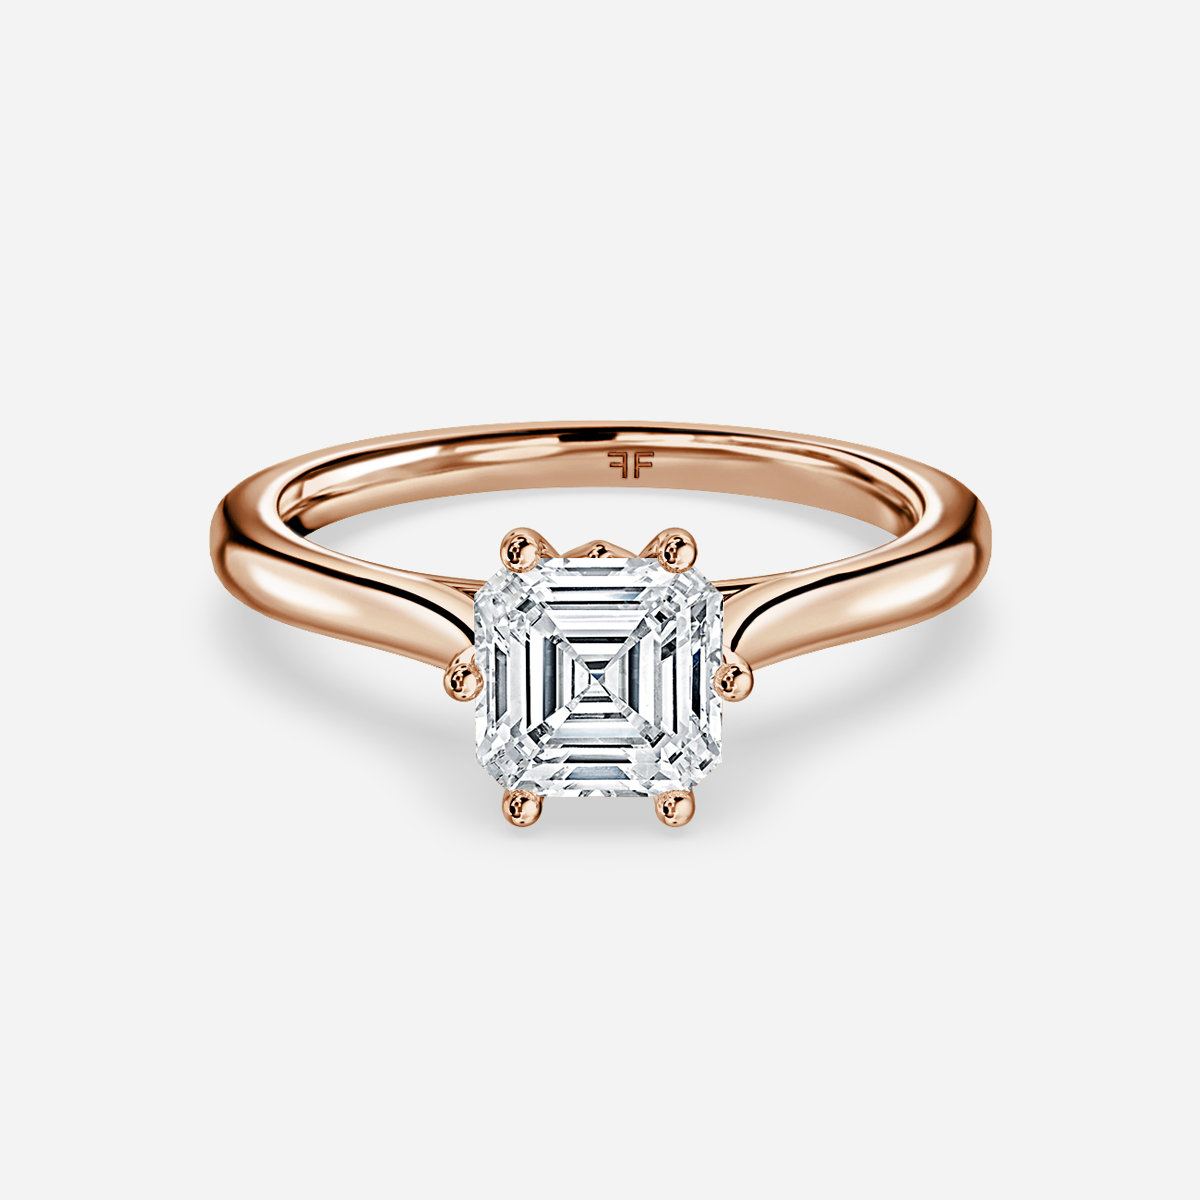 Asscher cut diamond engagement rings